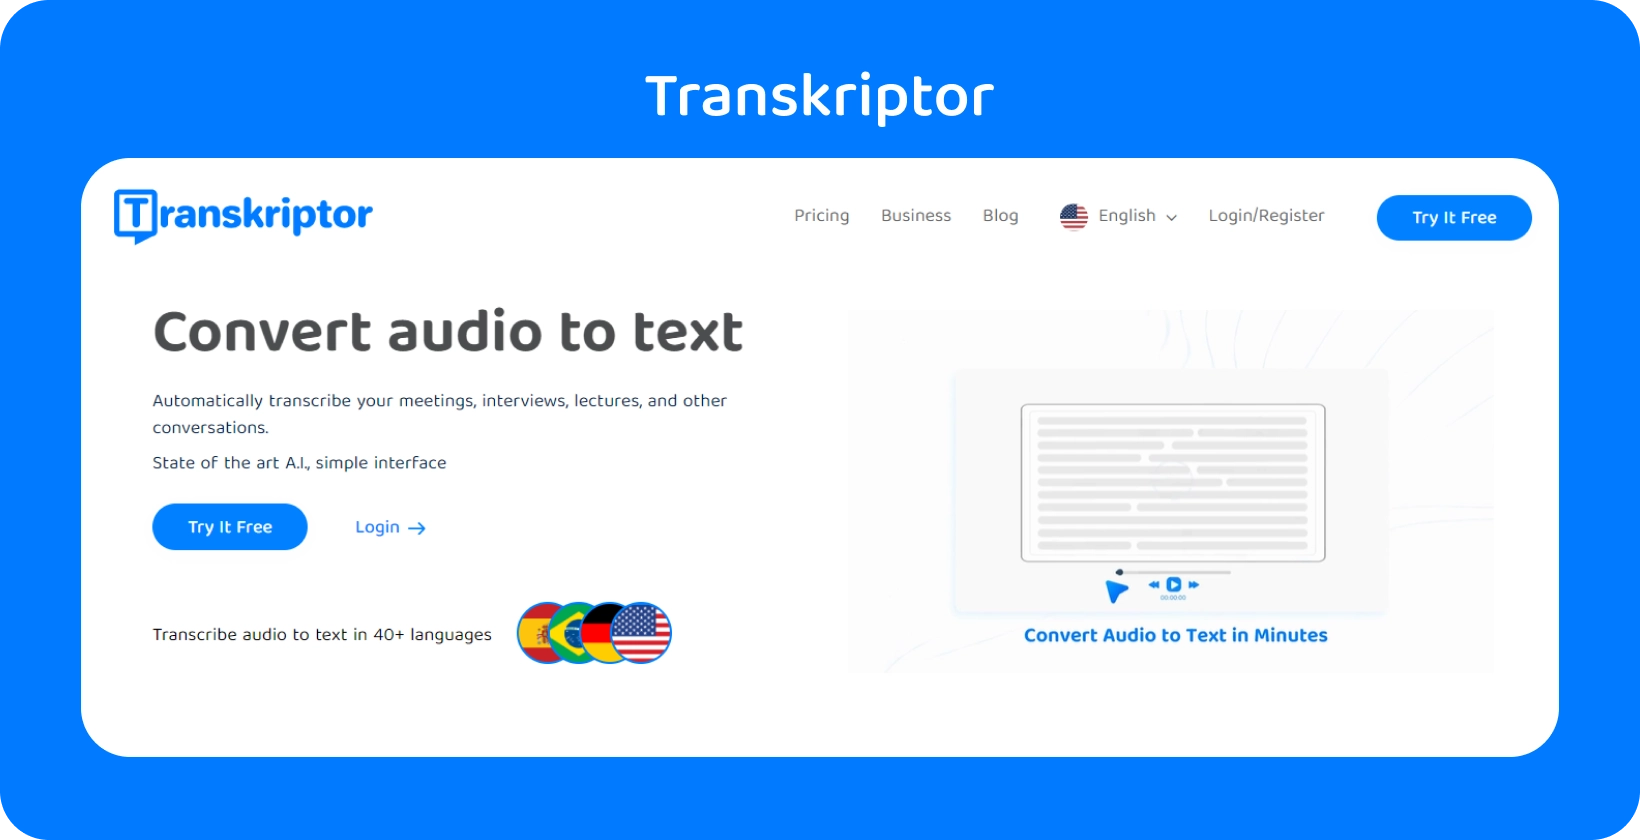 Transkriptor interfejs prikazuje audio konverziju u tekst, podržavajući preko 40 jezika za različite formate datoteka.
